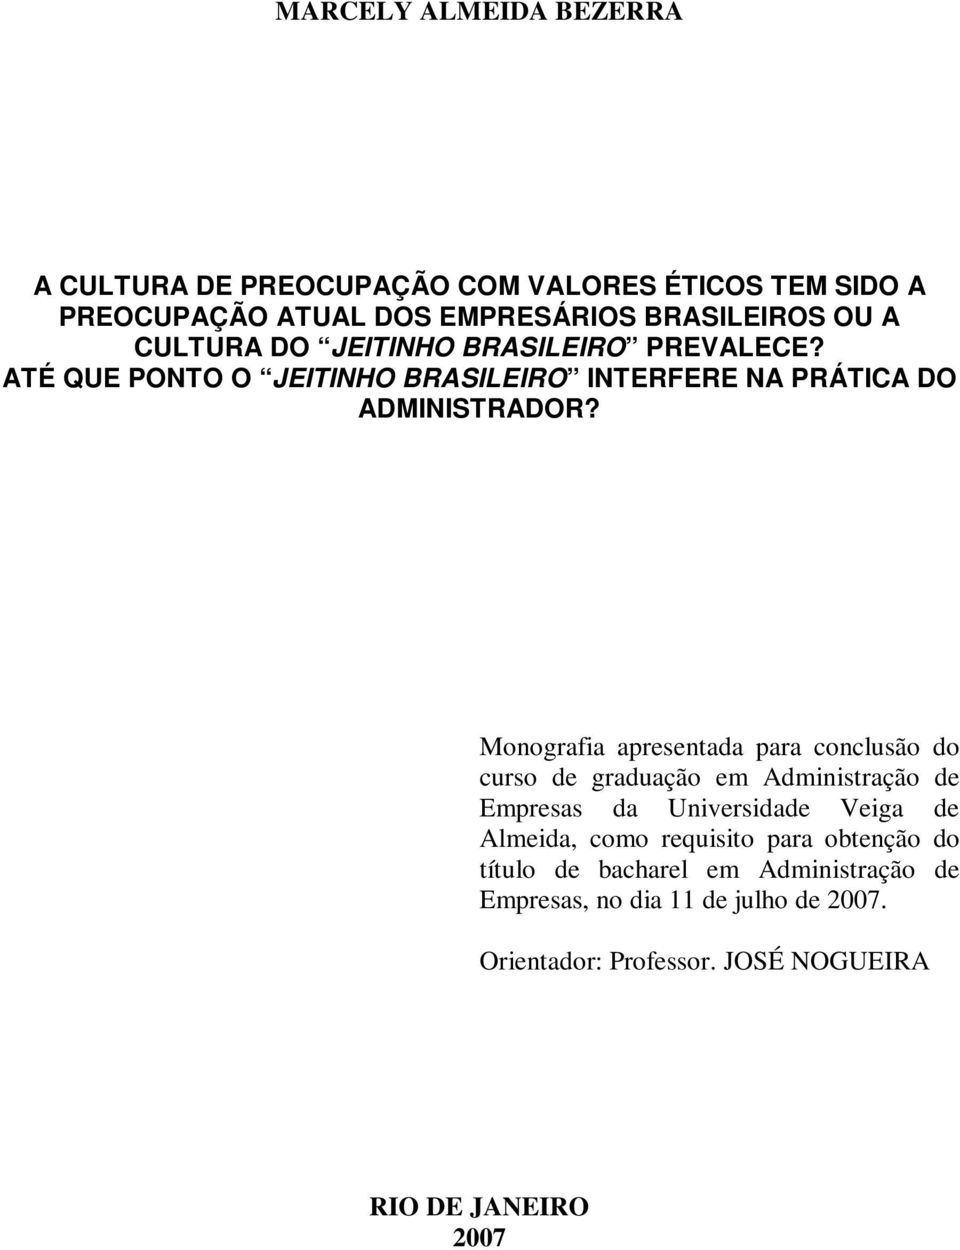 Monografia apresentada para conclusão do curso de graduação em Administração de Empresas da Universidade Veiga de Almeida, como